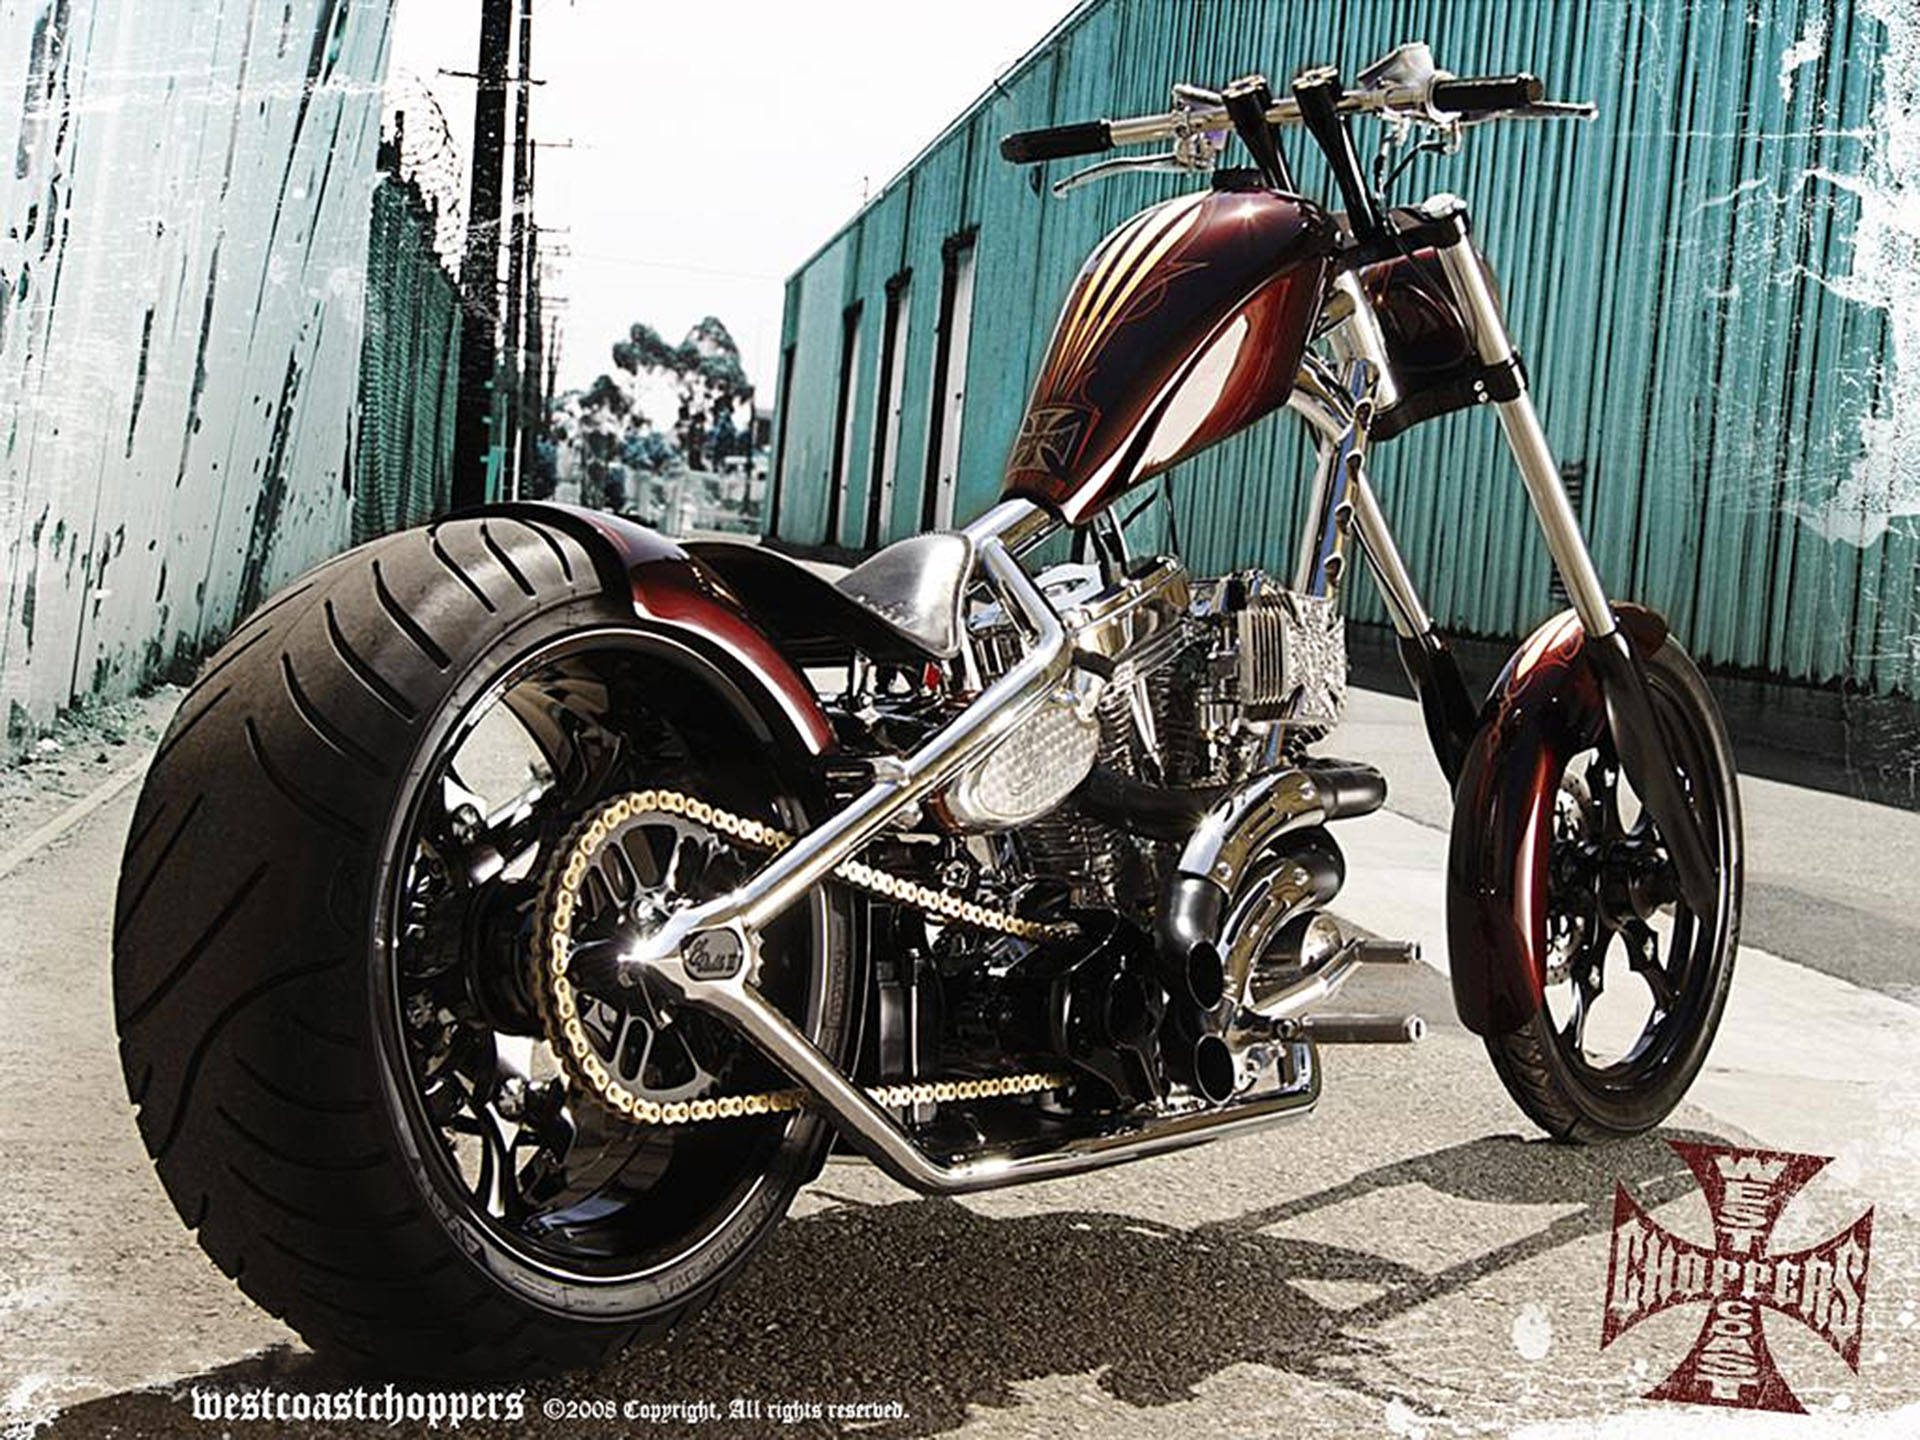 Västkustenchoppers Maroon Motorcykel. Wallpaper